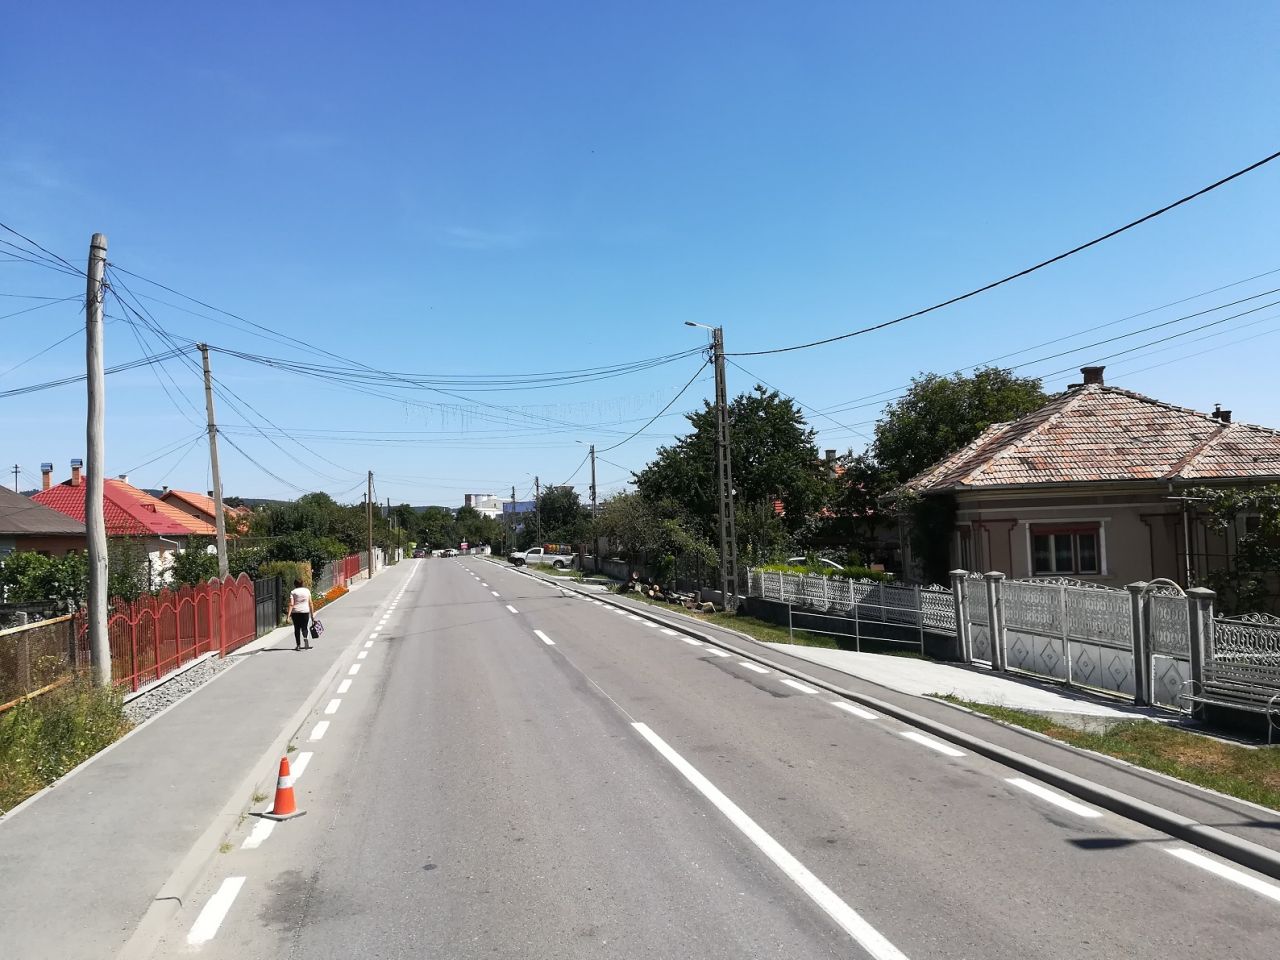 După asfaltare, drumurile din Cluj vor fi marcate. În ce zonă sunt lucrări?